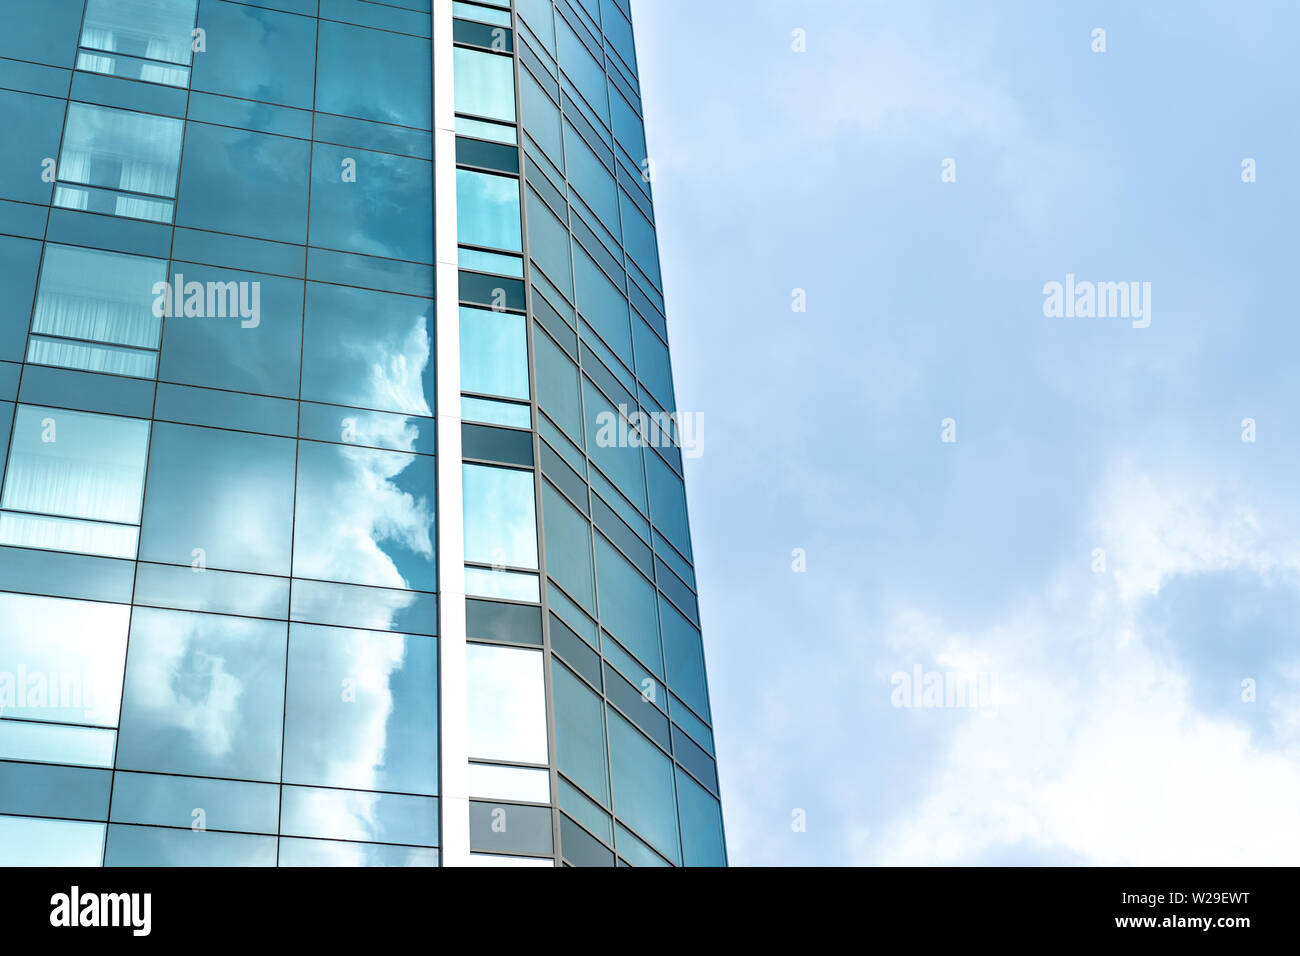 La prospettiva e la parte inferiore dell'angolo di visualizzazione a trama sullo sfondo di un moderno edificio di vetro grattacieli con cielo molto nuvoloso Foto Stock